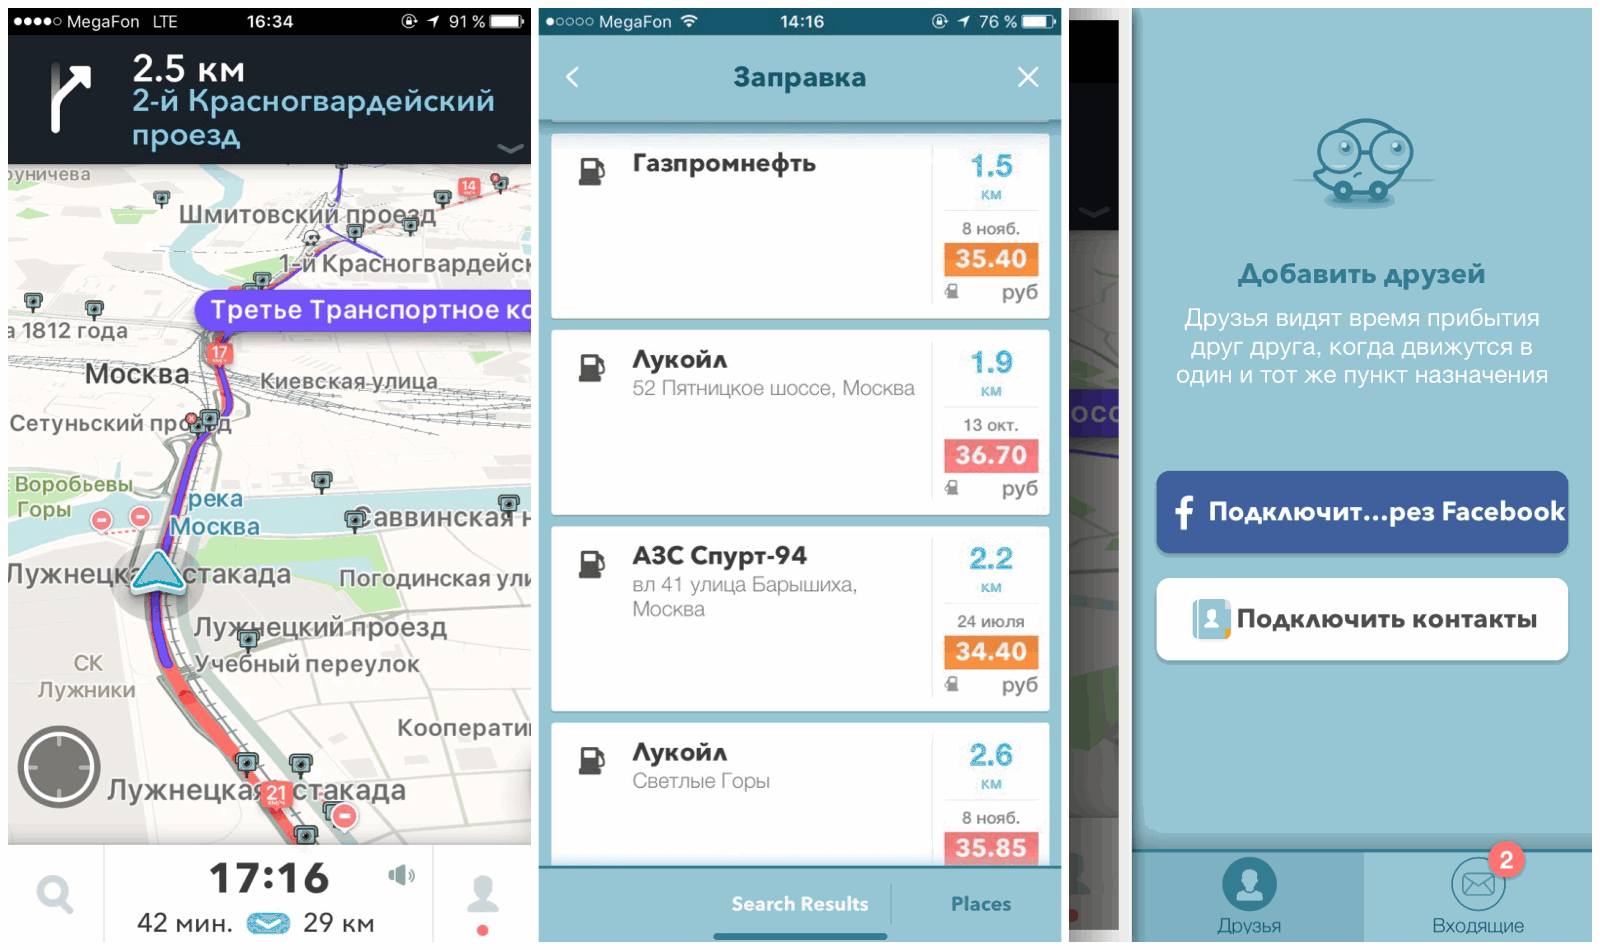 На мой взгляд, приложение Waze не способно быть полноценной альтернативой «Яндекс.Навигатору» по причине примитивной графики (проблемные участки показаны очень выборочно). Однако может похвастаться парой особенных «фишек». Программа знает цены на ближайших заправках и помогает отслеживать геолокацию друзей. Разумеется, если и вы – и они этого хотите.